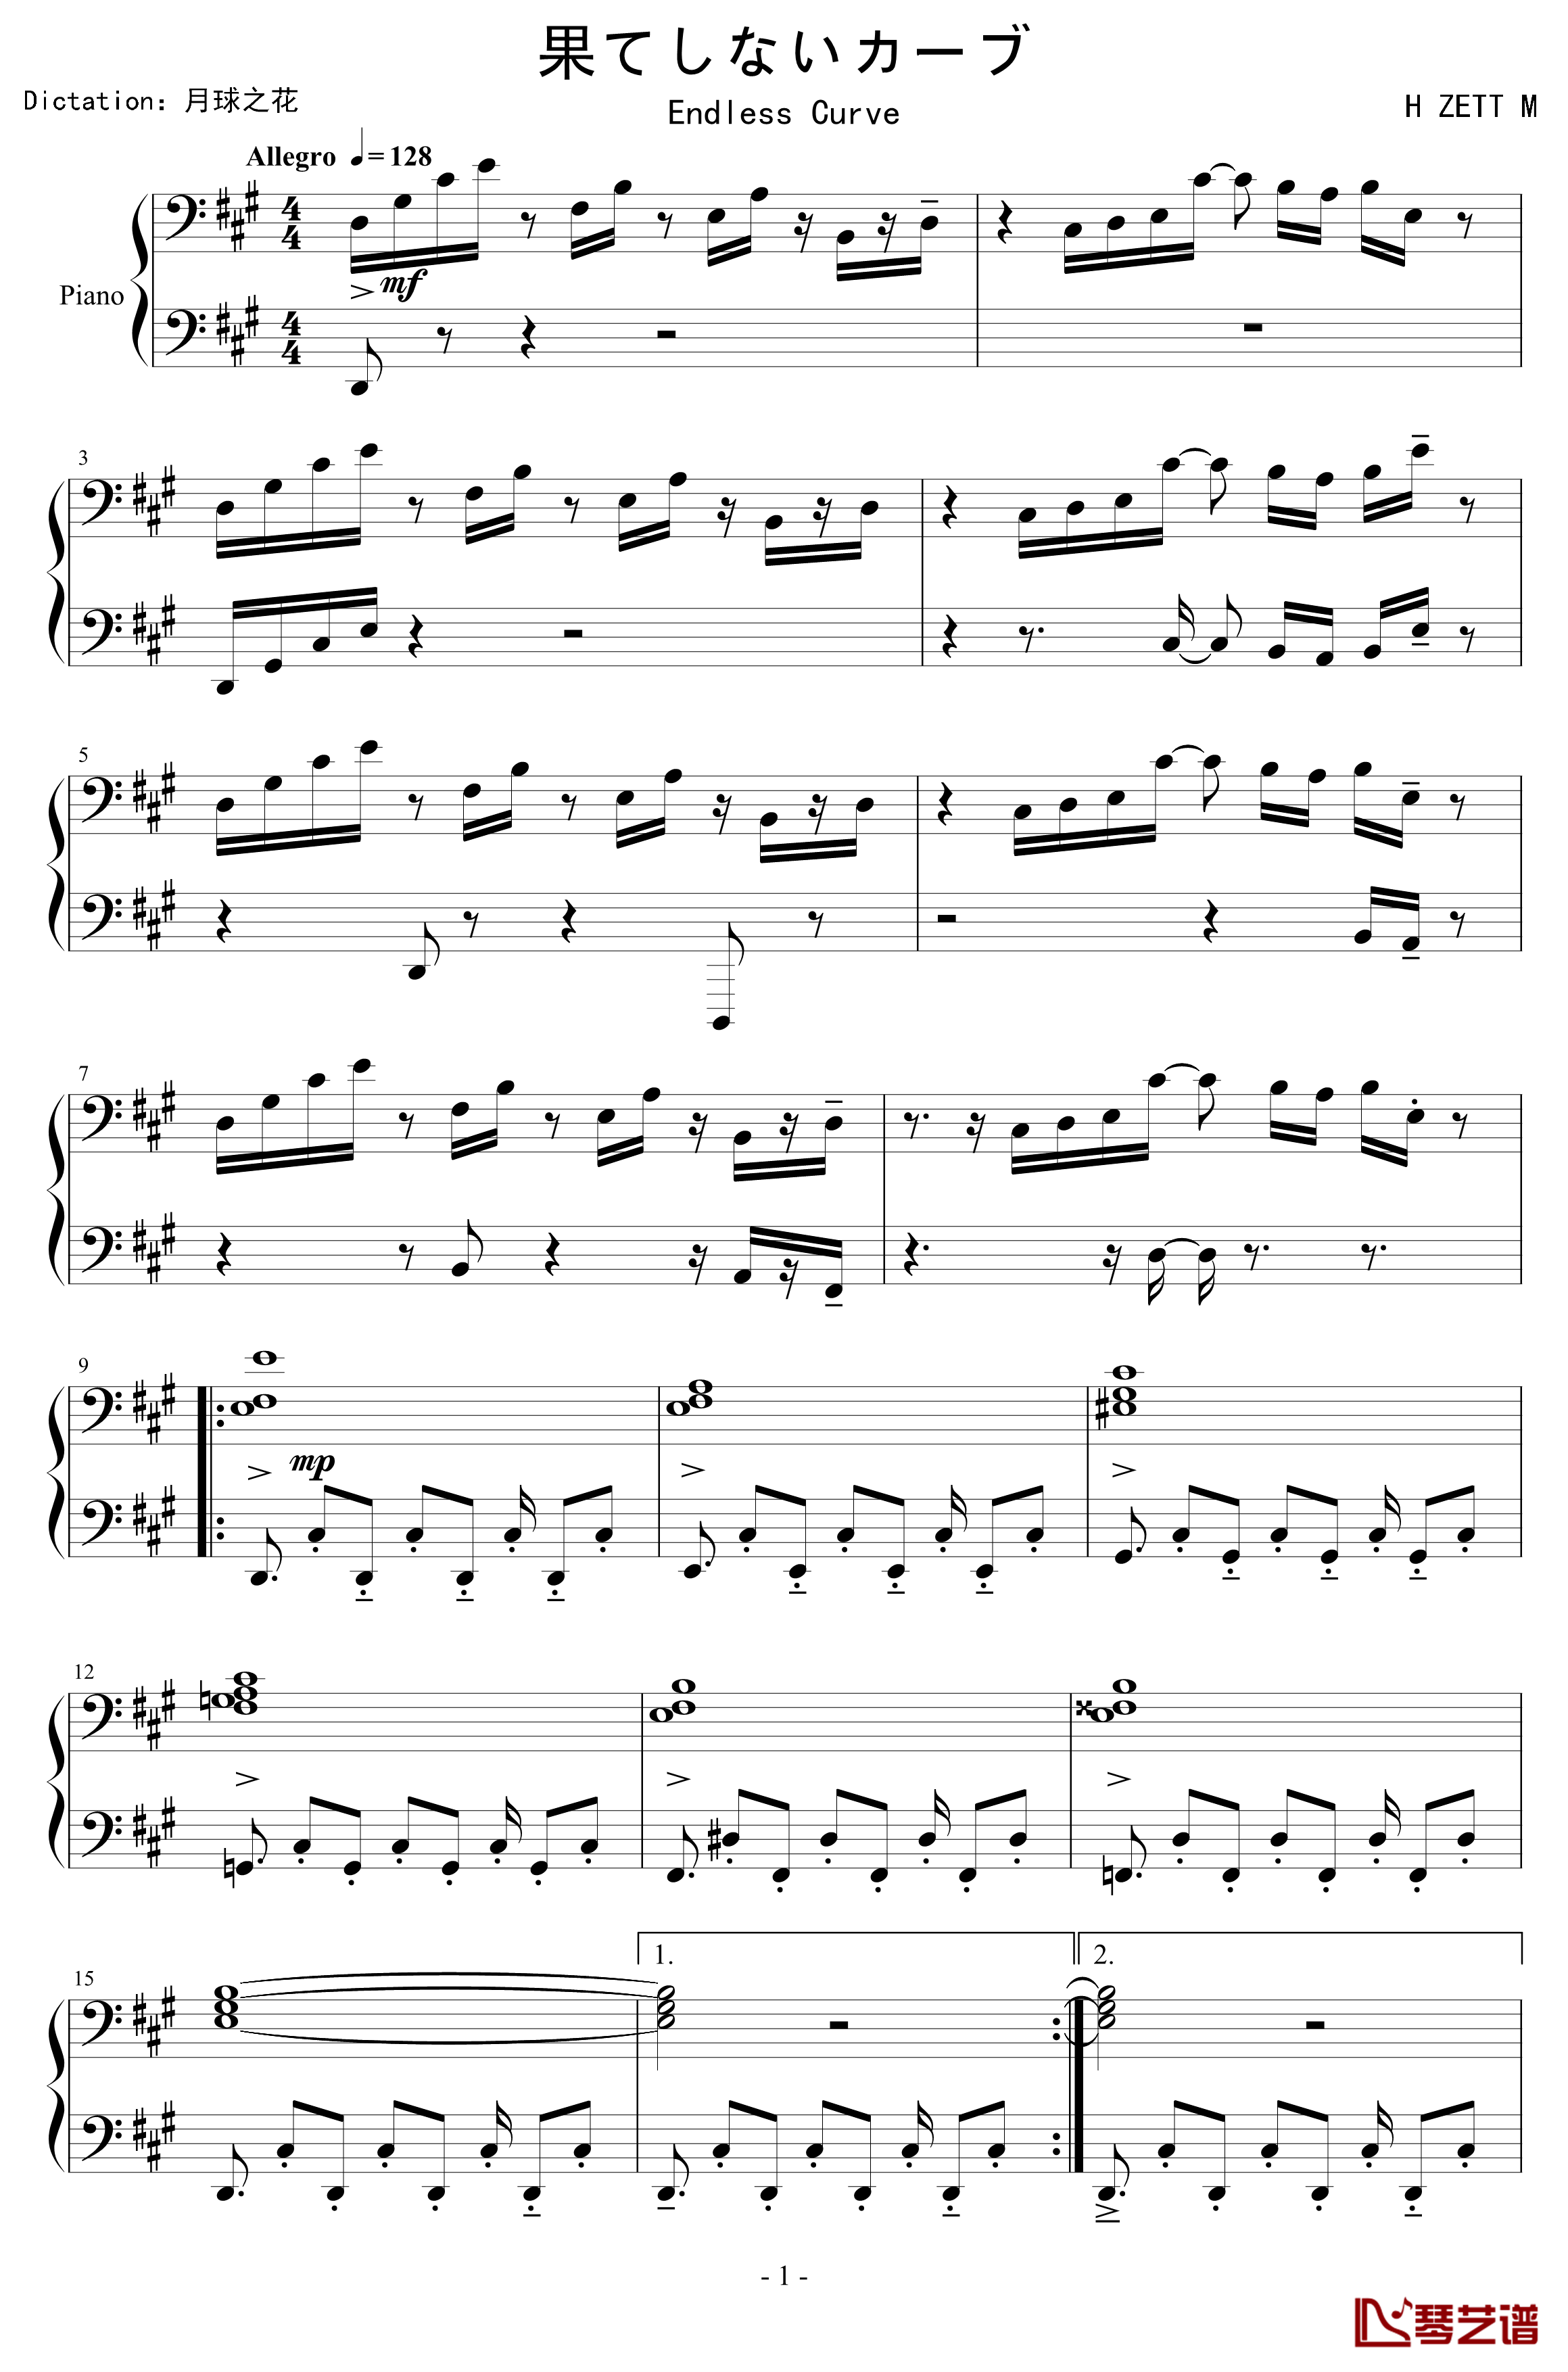 果てしないカーブ钢琴谱-Endless Curve-H ZETT M1